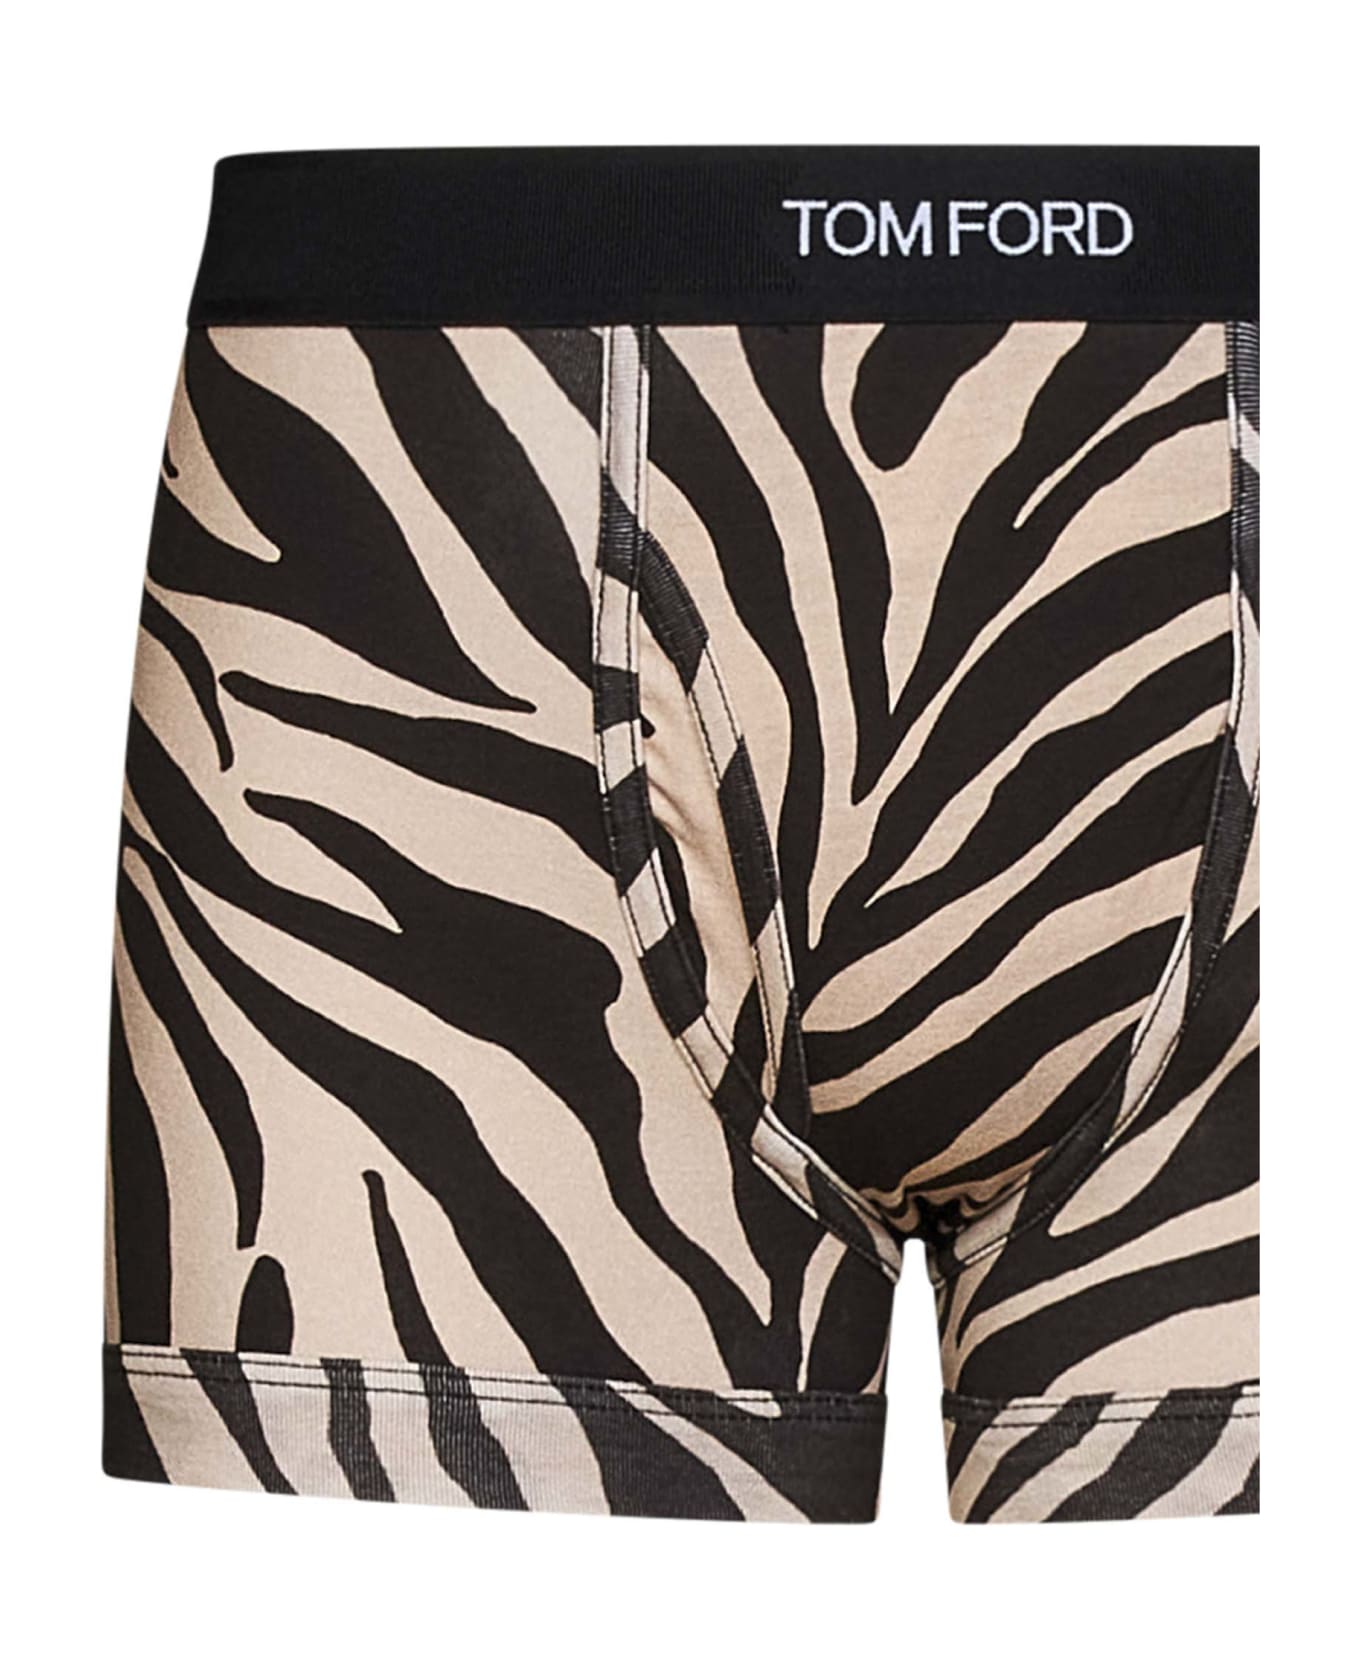 Tom Ford Zebra Printed Boxers - Beige